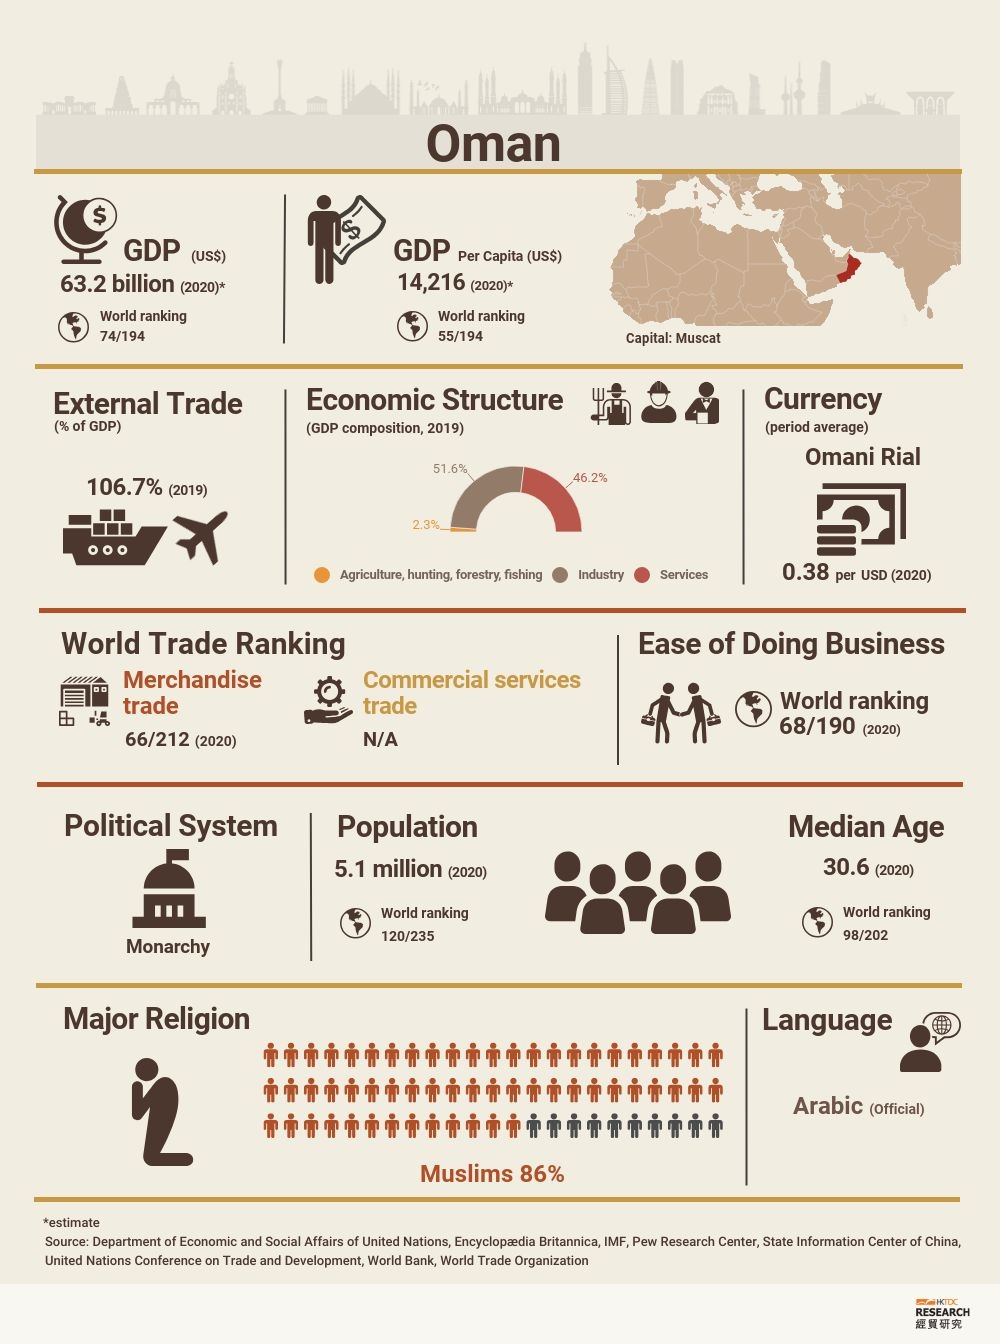 Oman: Market Profile | HKTDC Research